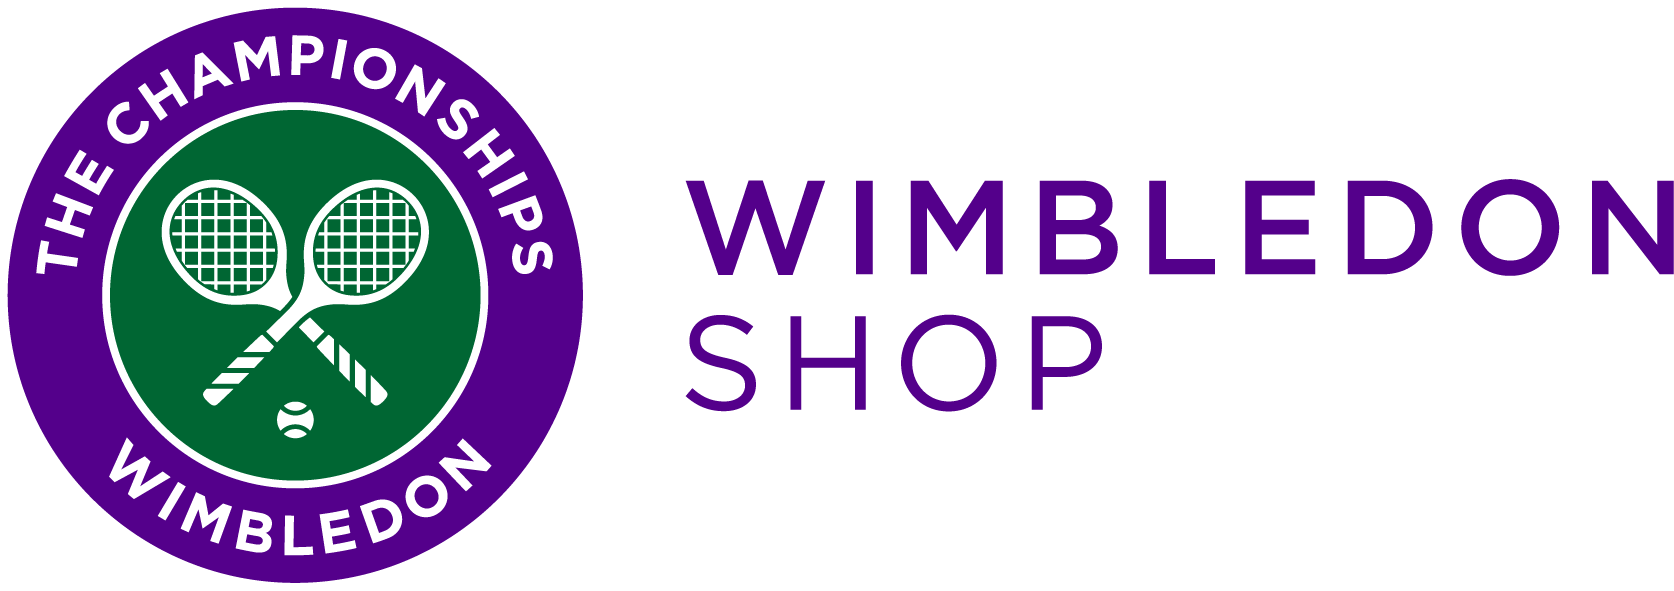 wimbledon shop online